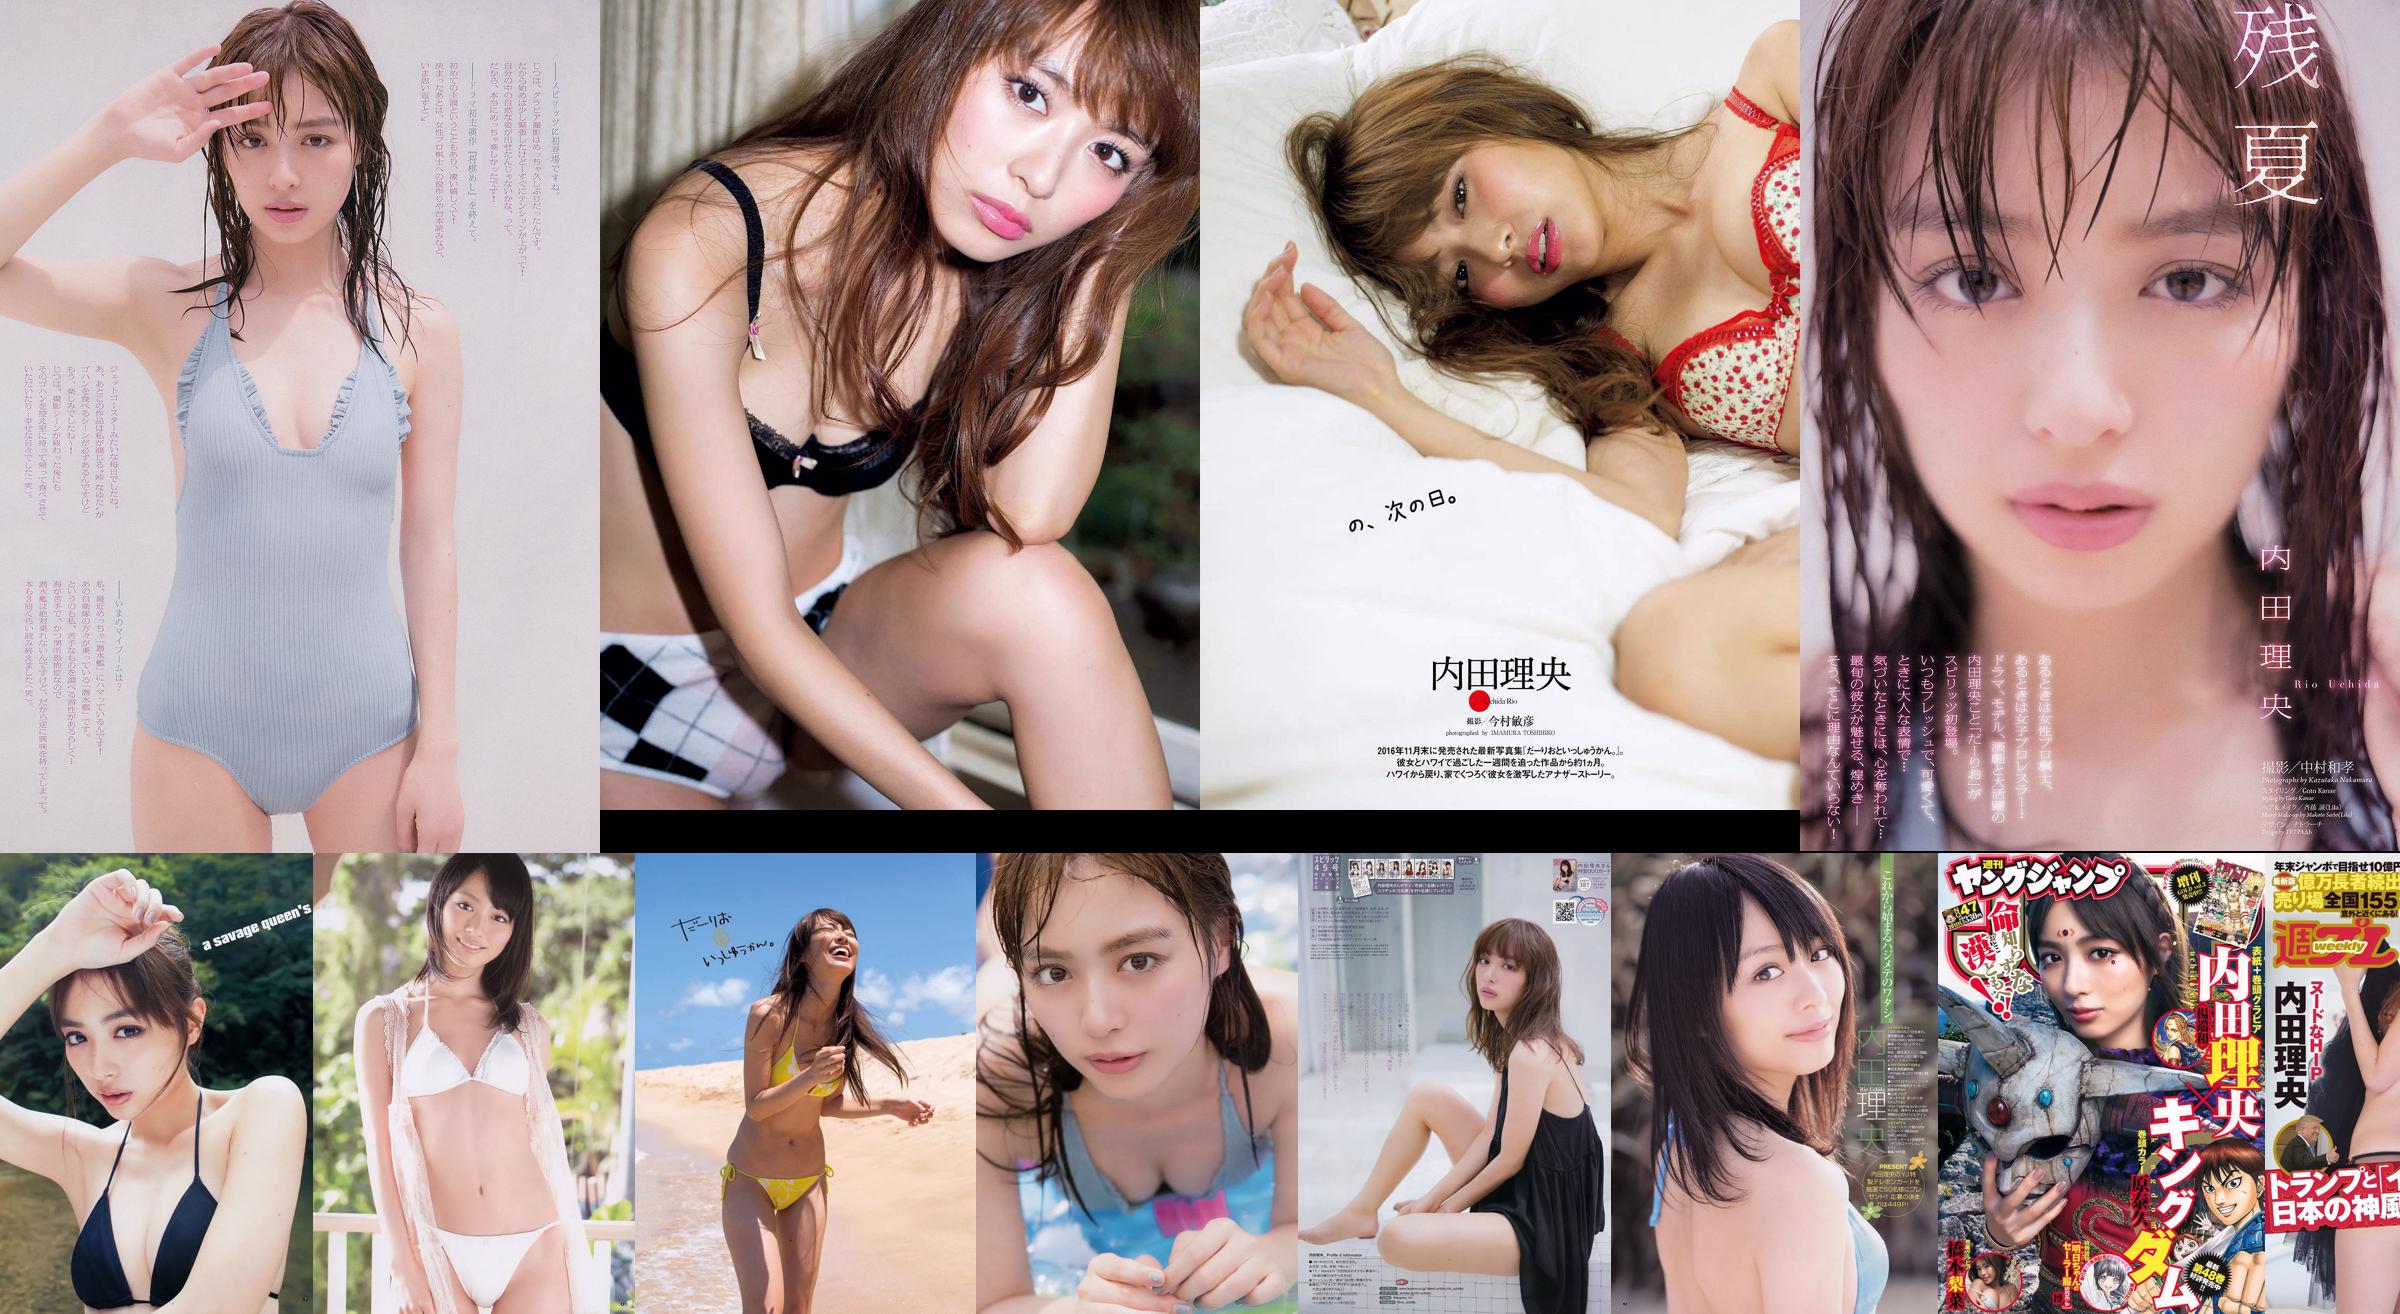 Haruna Kojima YUNA Riho Yoshioka Akemi Darenogare Ruriko Kojima Mana Sakura [Playboy Semanal] 2015 Fotografia No.34-35 No.f324d2 Página 1